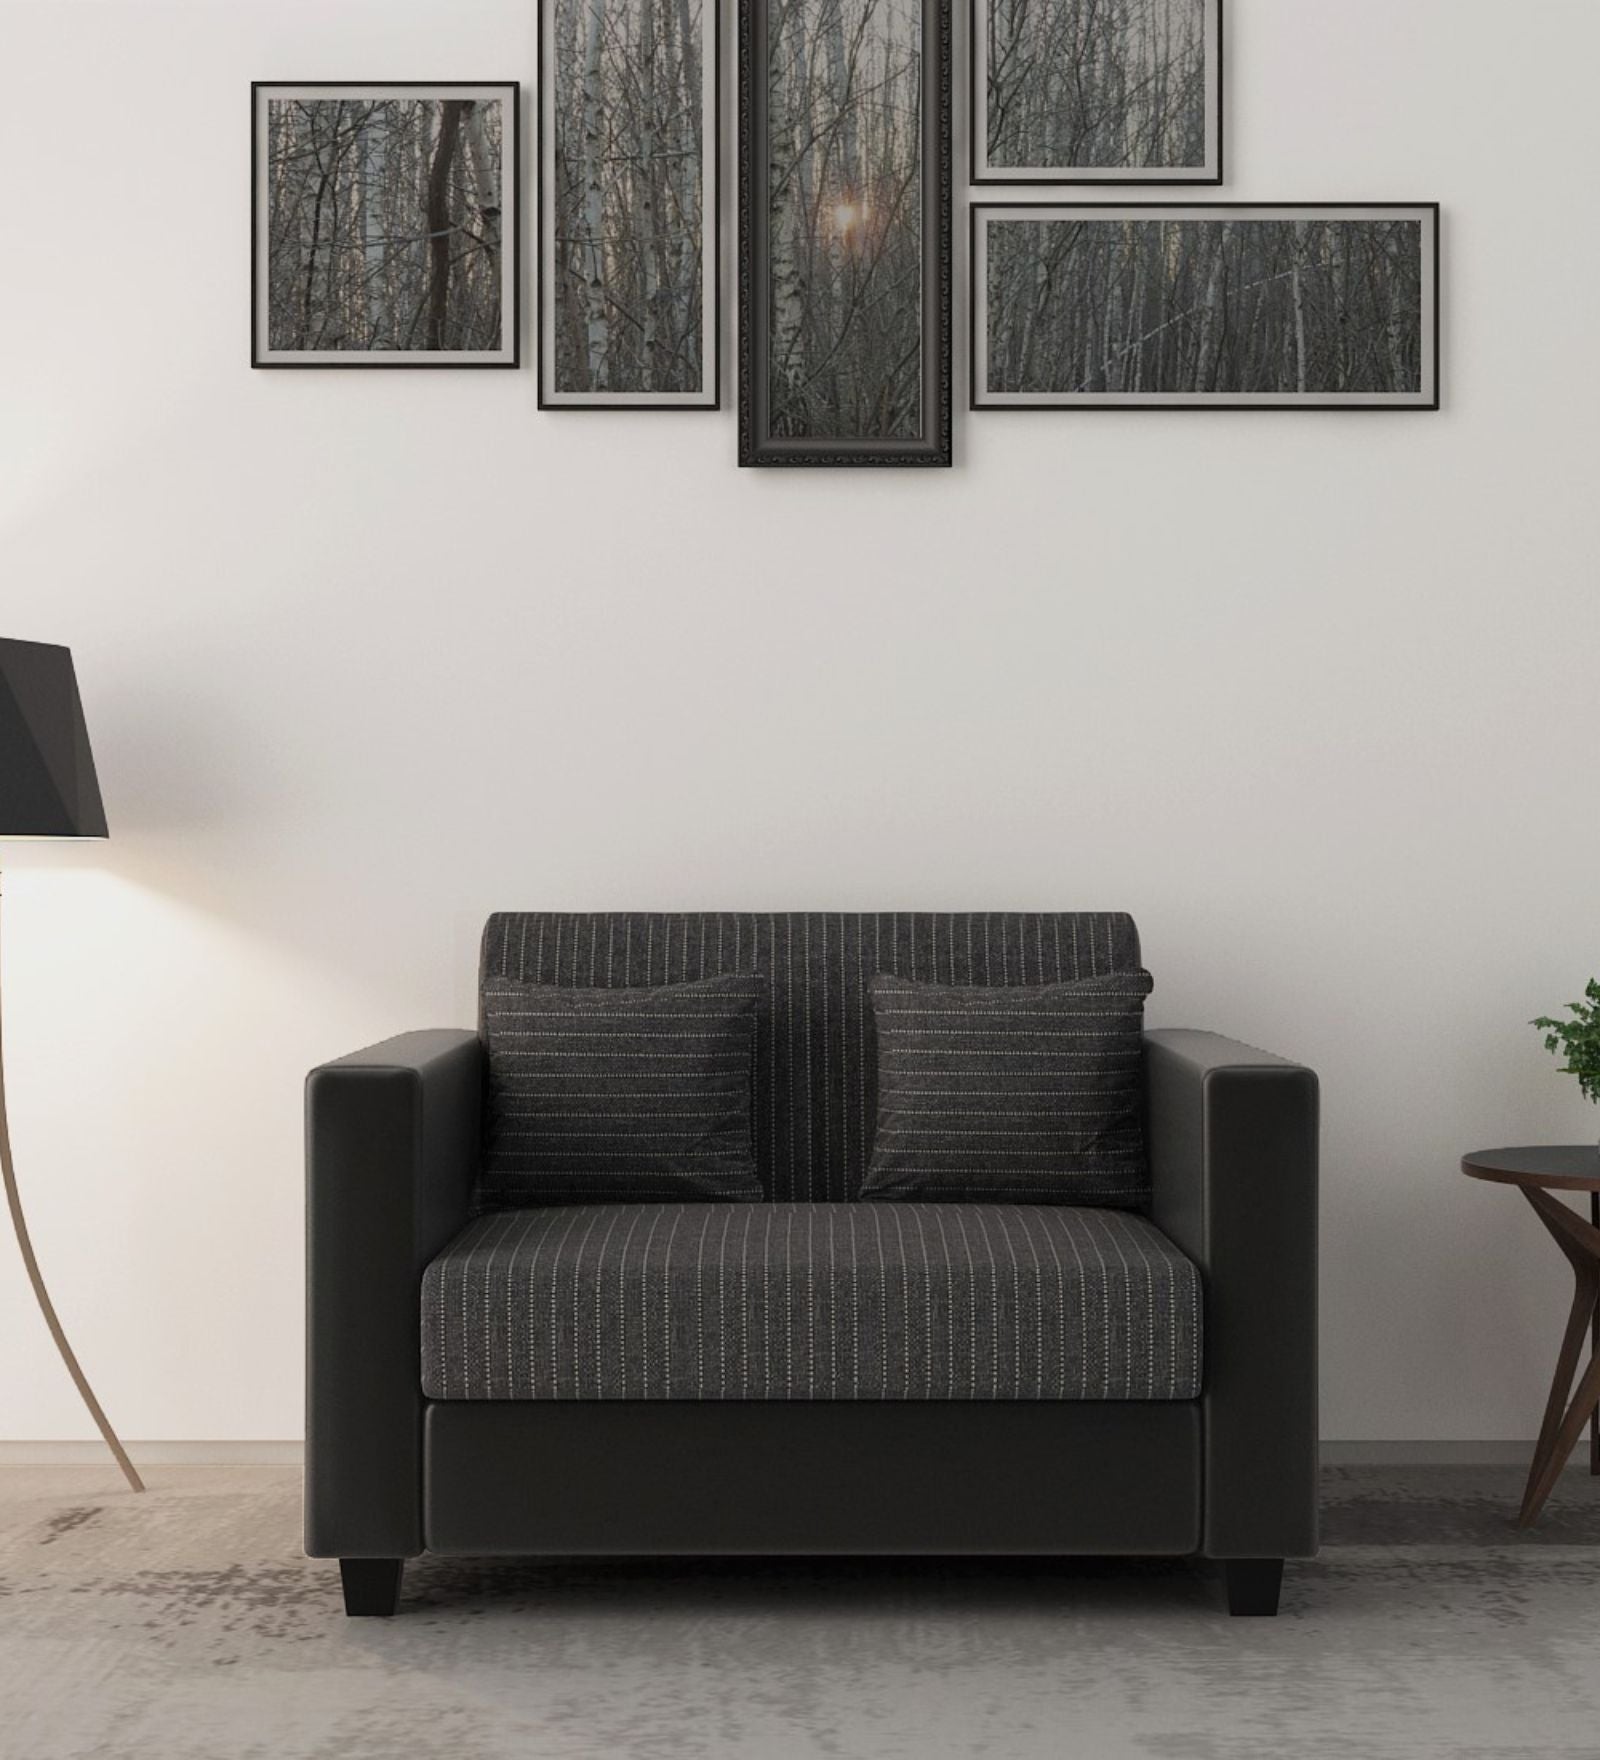 Baley Fabric 2 Seater Sofa in Lama Black Colour